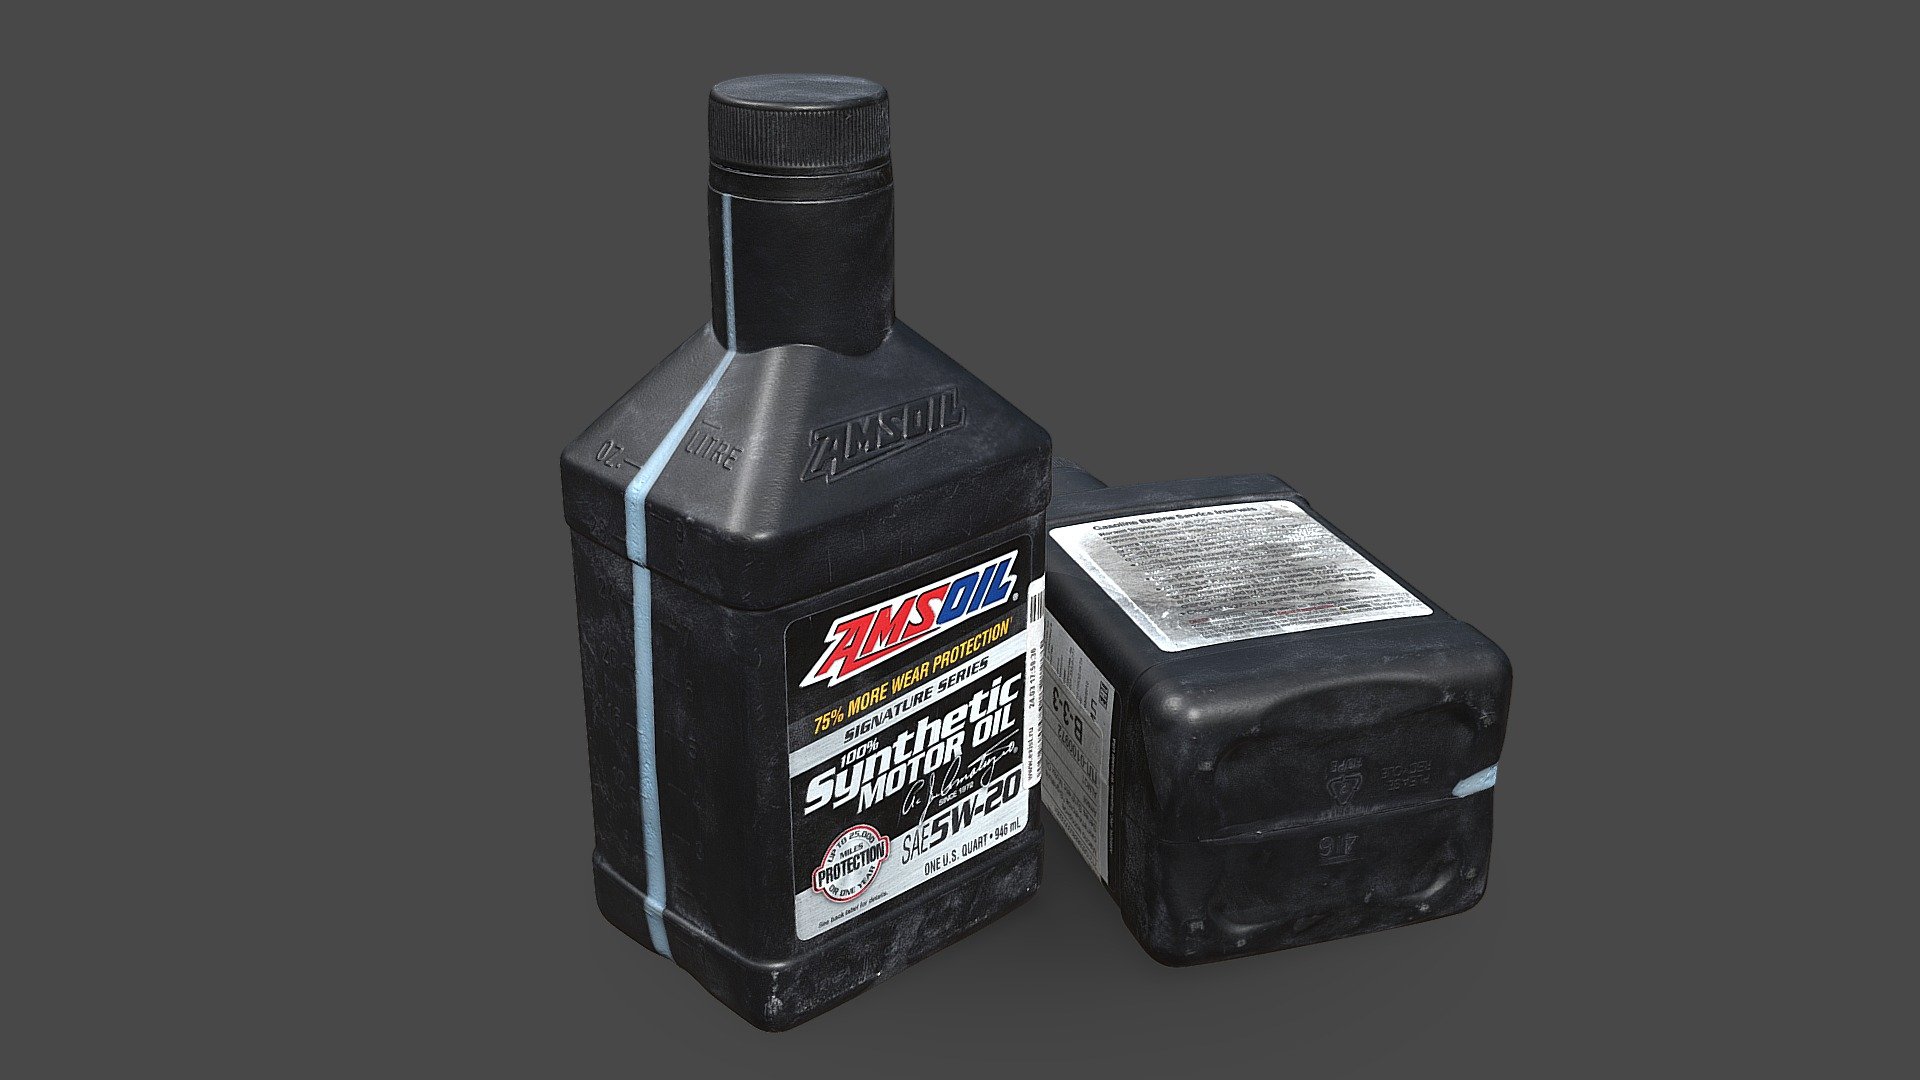 Motor Oil Bottle 3d model photogrammetry scan - Motor Oil Bottle - 3D model by kanistra 3d model